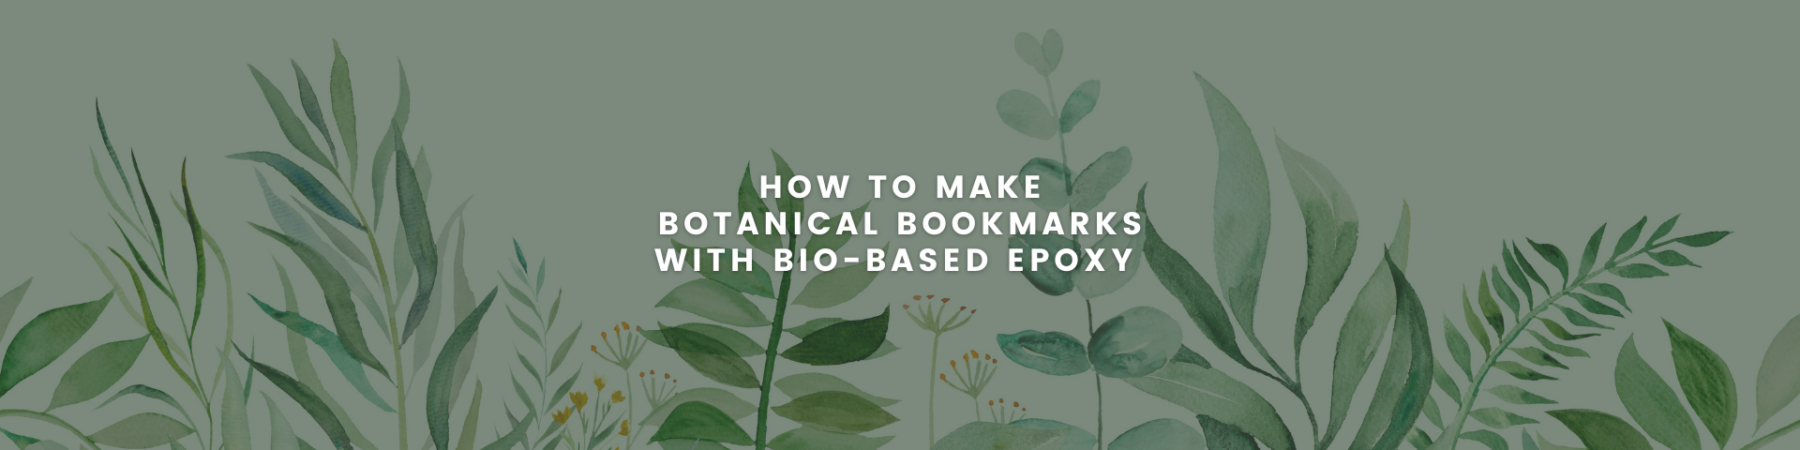 How to make Botanical Bookmarks with Bio-Based Epoxy